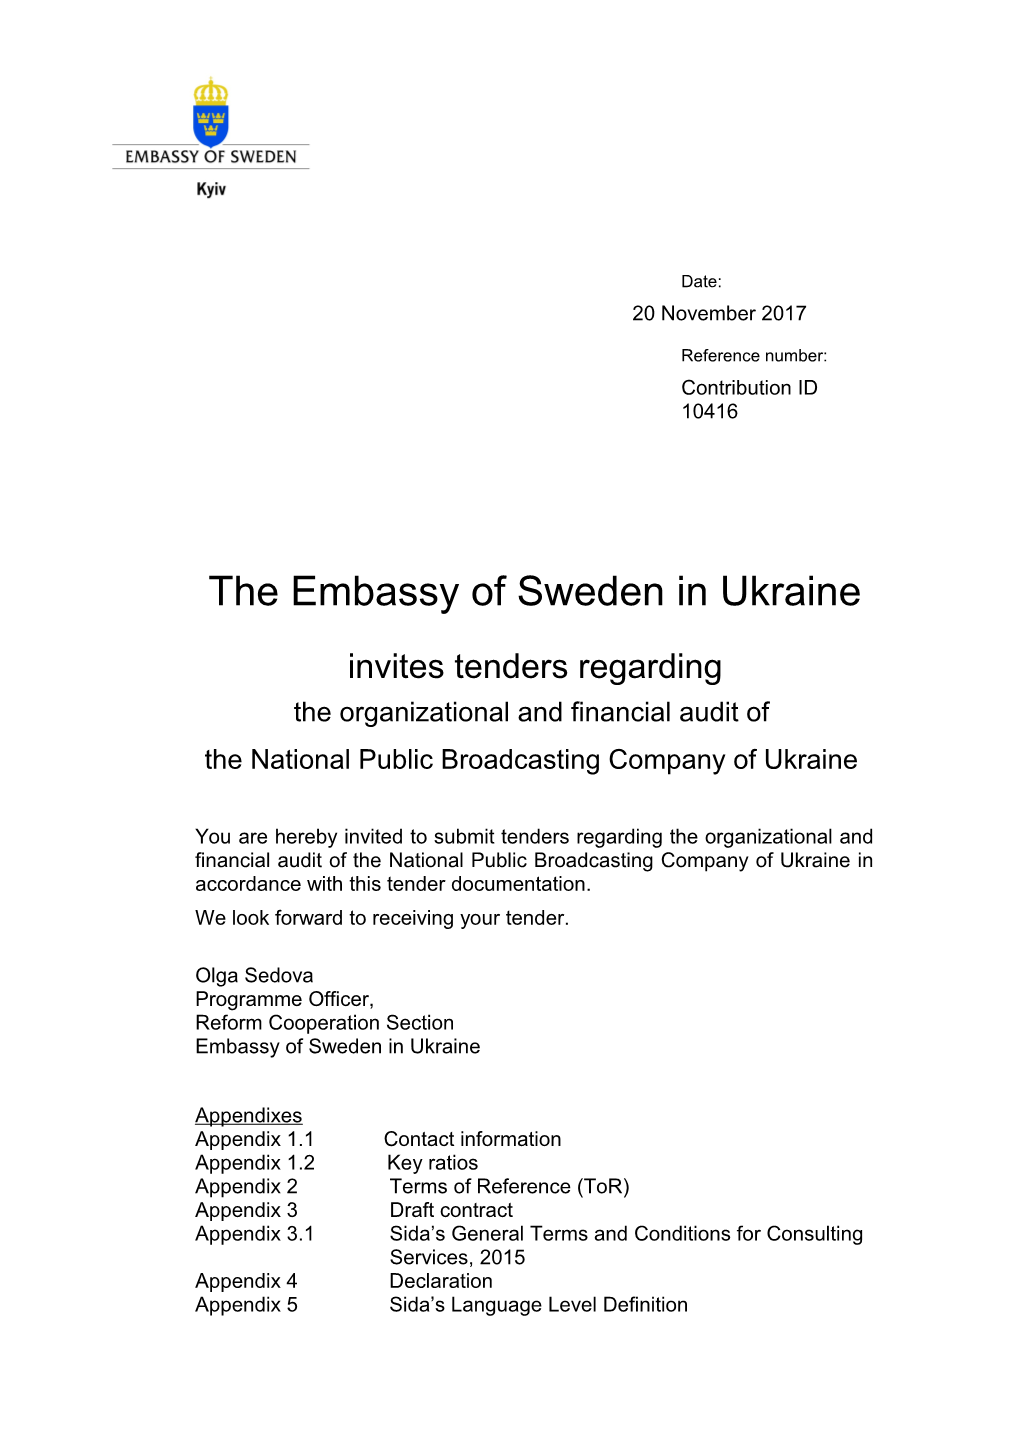 The Embassy of Sweden in Ukraine